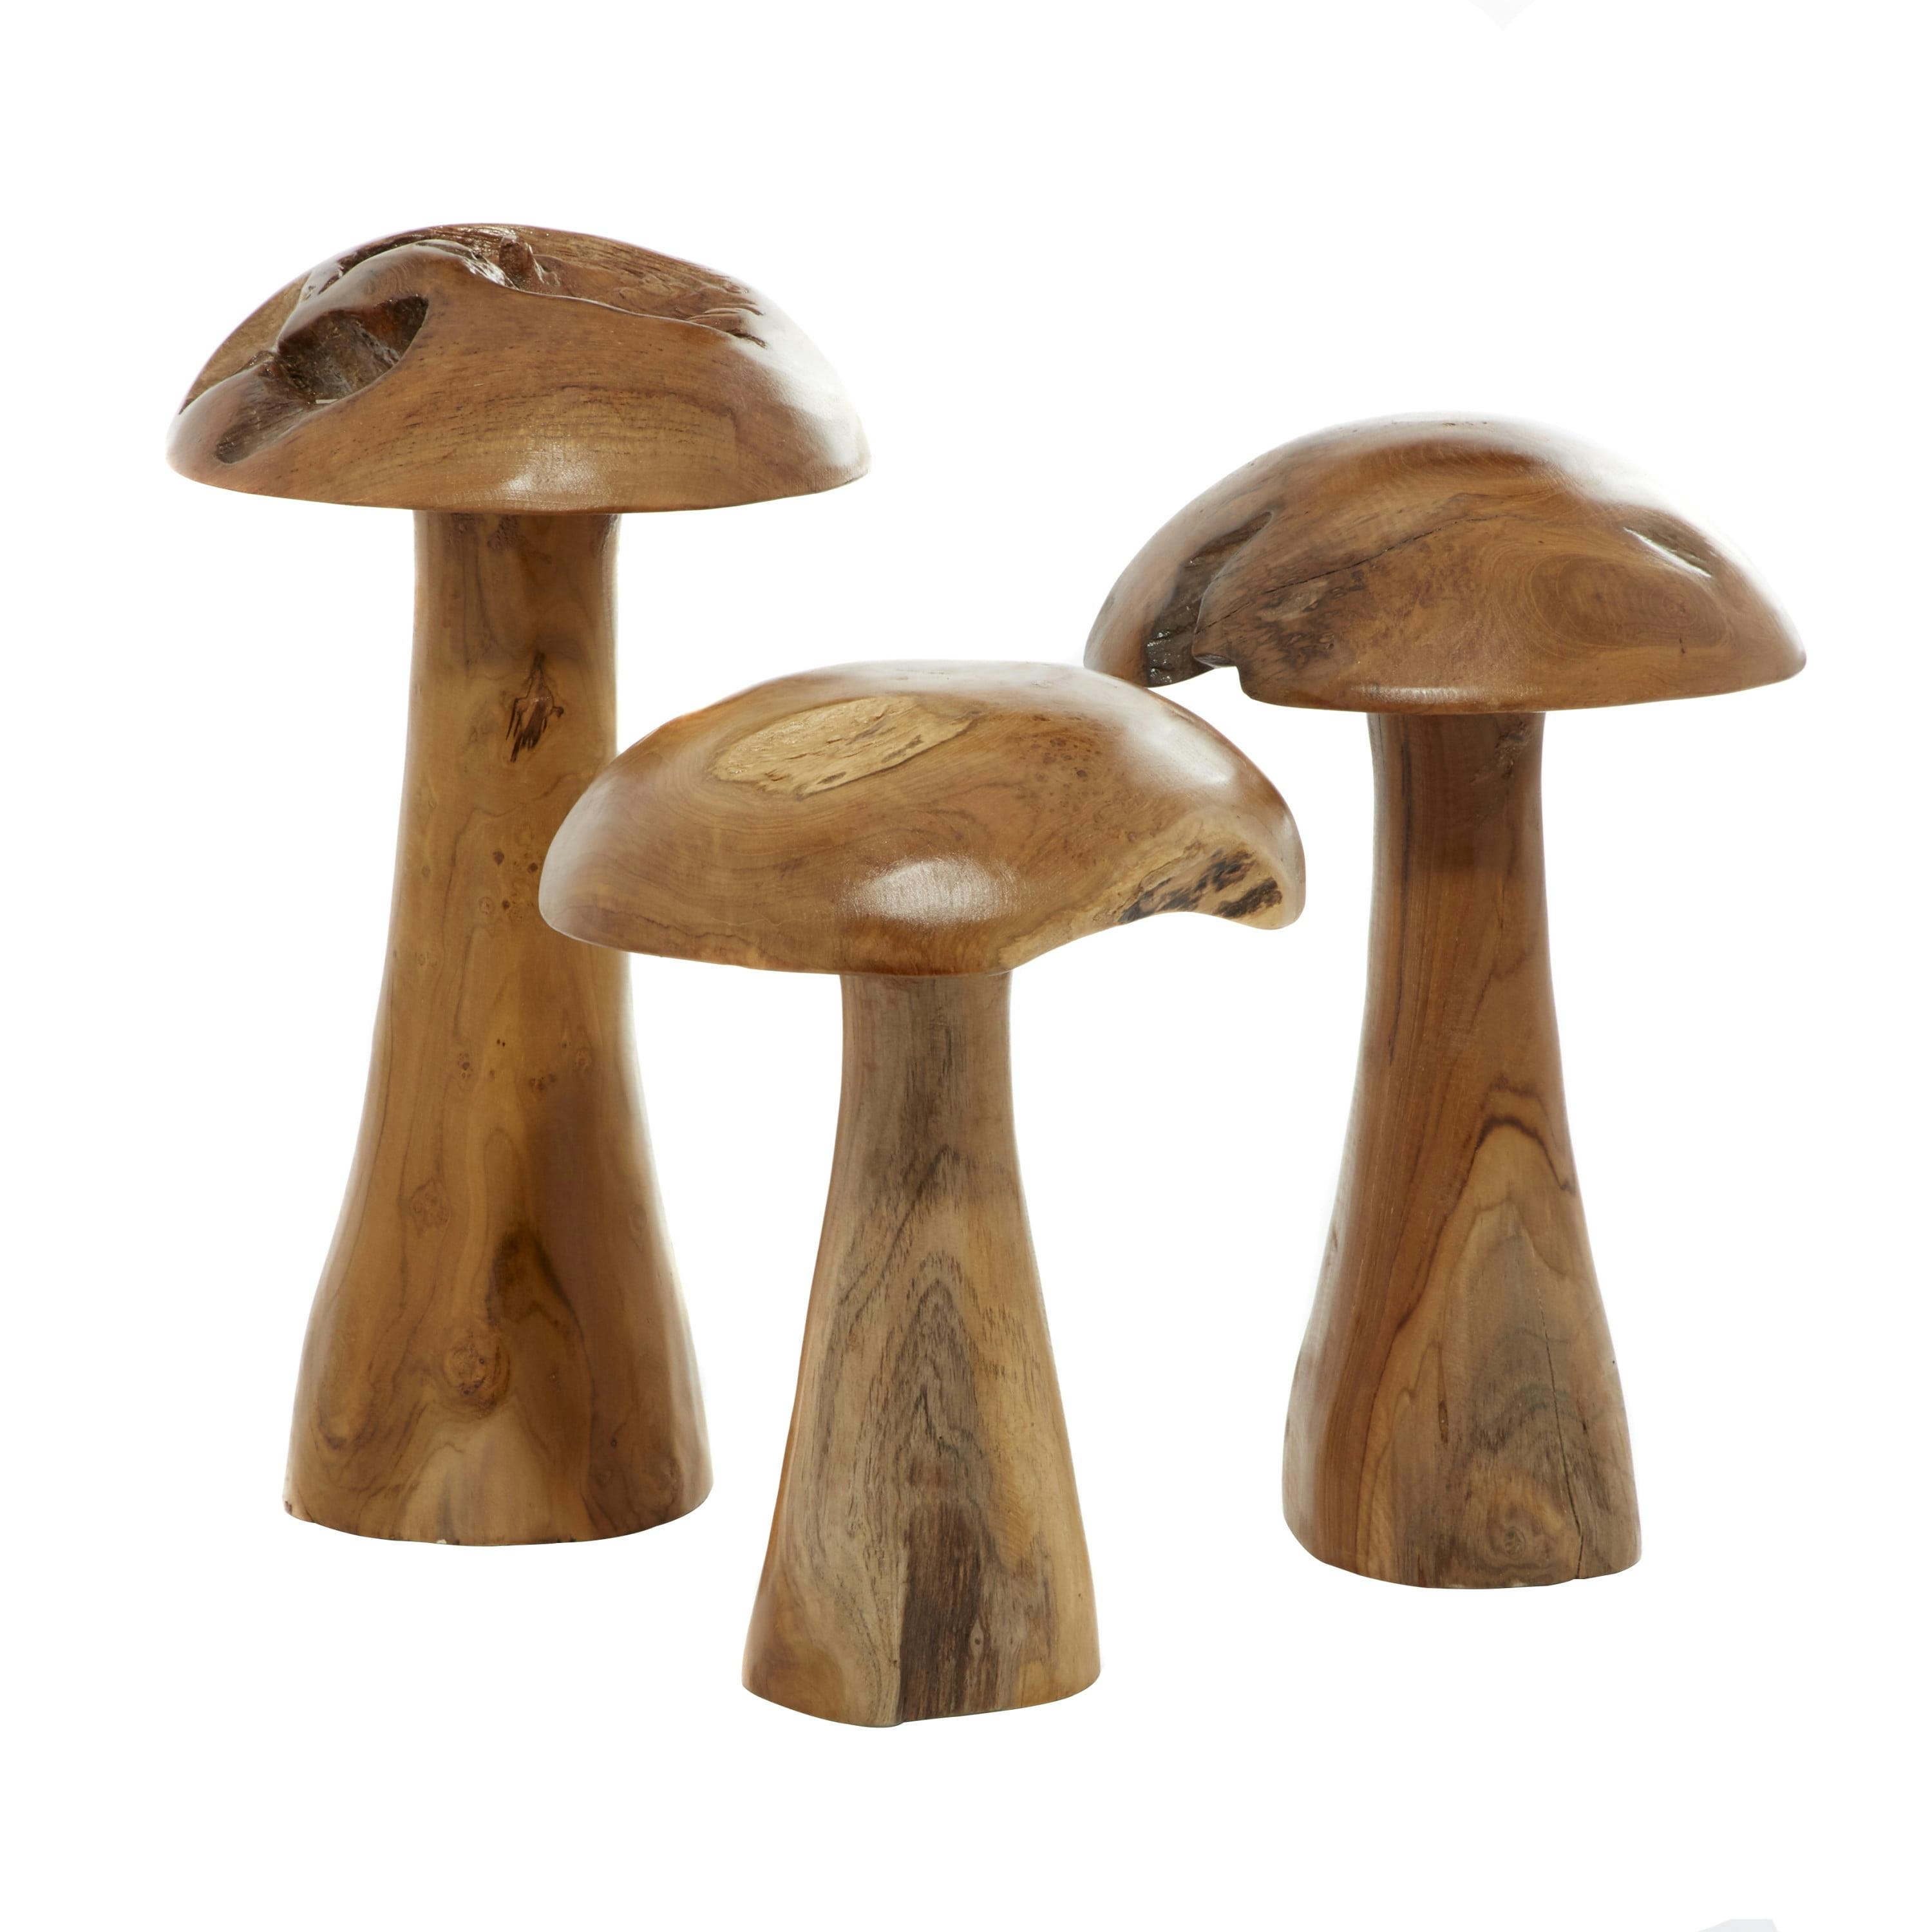 Handcrafted Teak Wood Mushroom Sculptures in Natural Brown, Set of 3